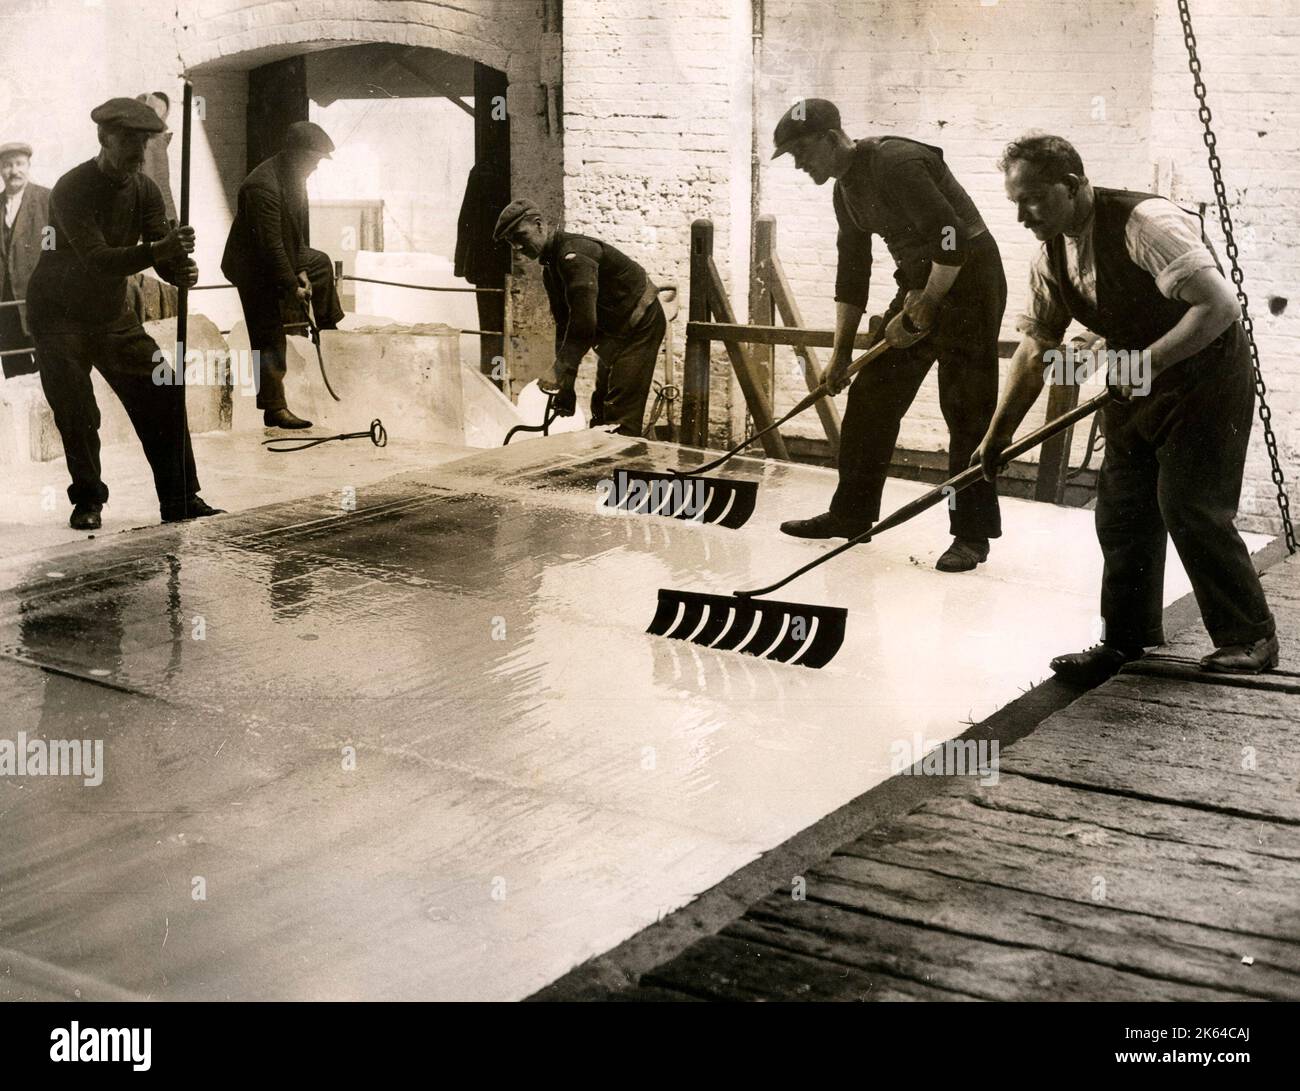 Ouvriers fabriquant de la glace, Londres, 1920s Banque D'Images